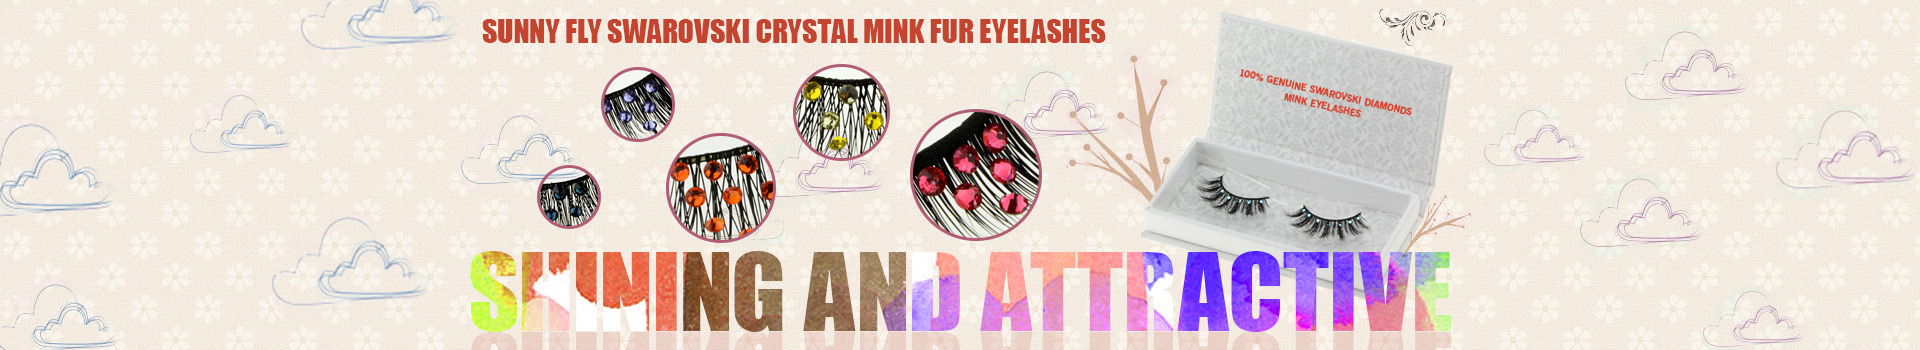 Swarovski Crystal Mink Fur Eyelashes MS11